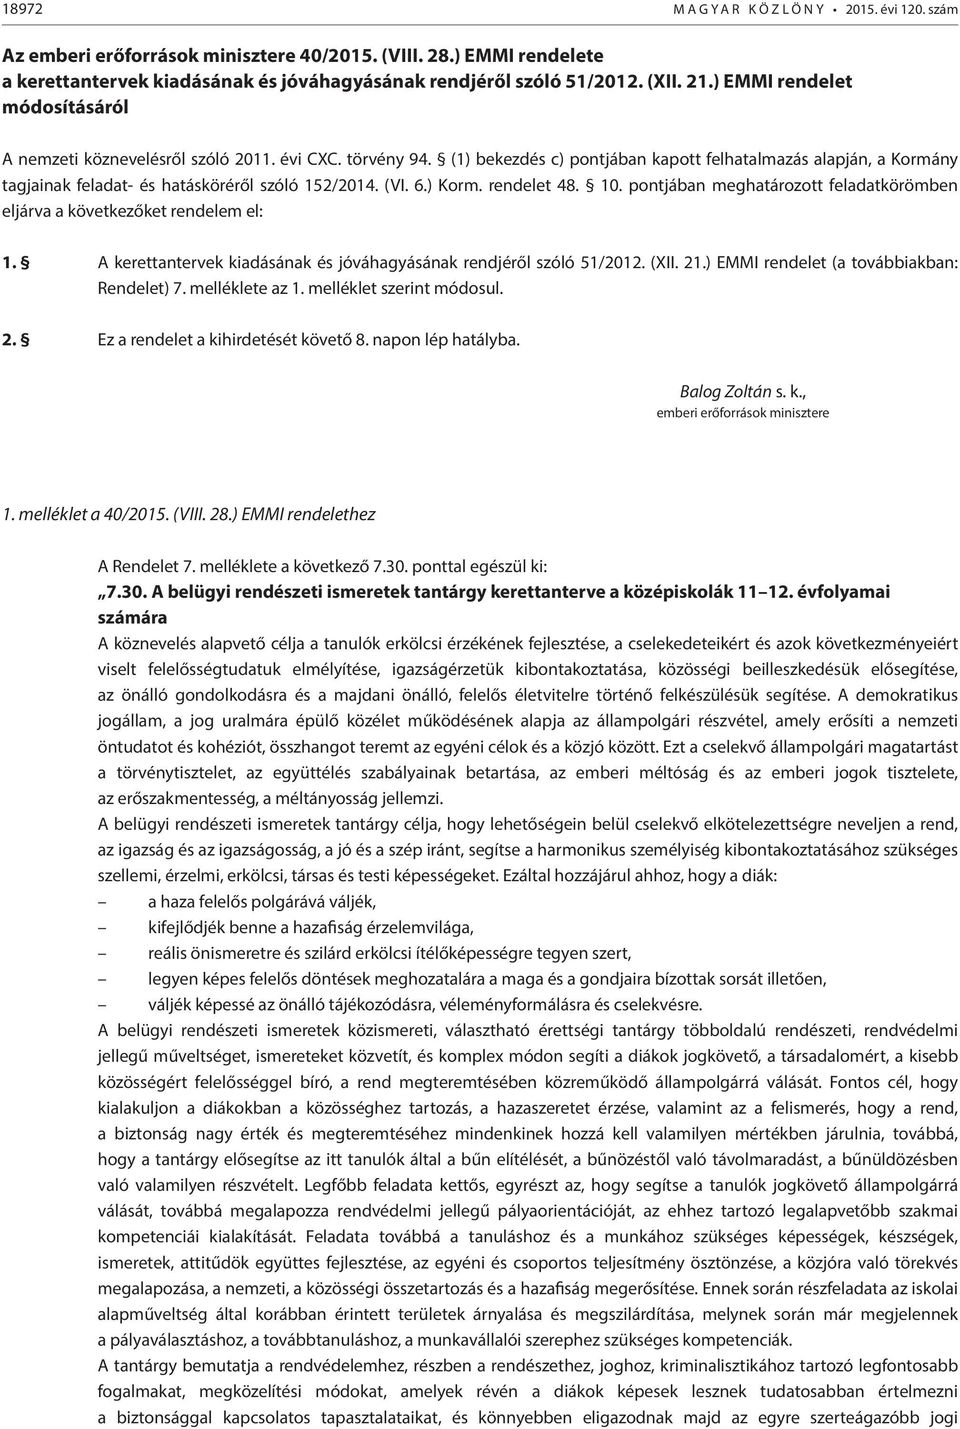 (1) bekezdés c) pontjában kapott felhatalmazás alapján, a Kormány tagjainak feladat- és hatásköréről szóló 152/2014. (VI. 6.) Korm. rendelet 48. 10.